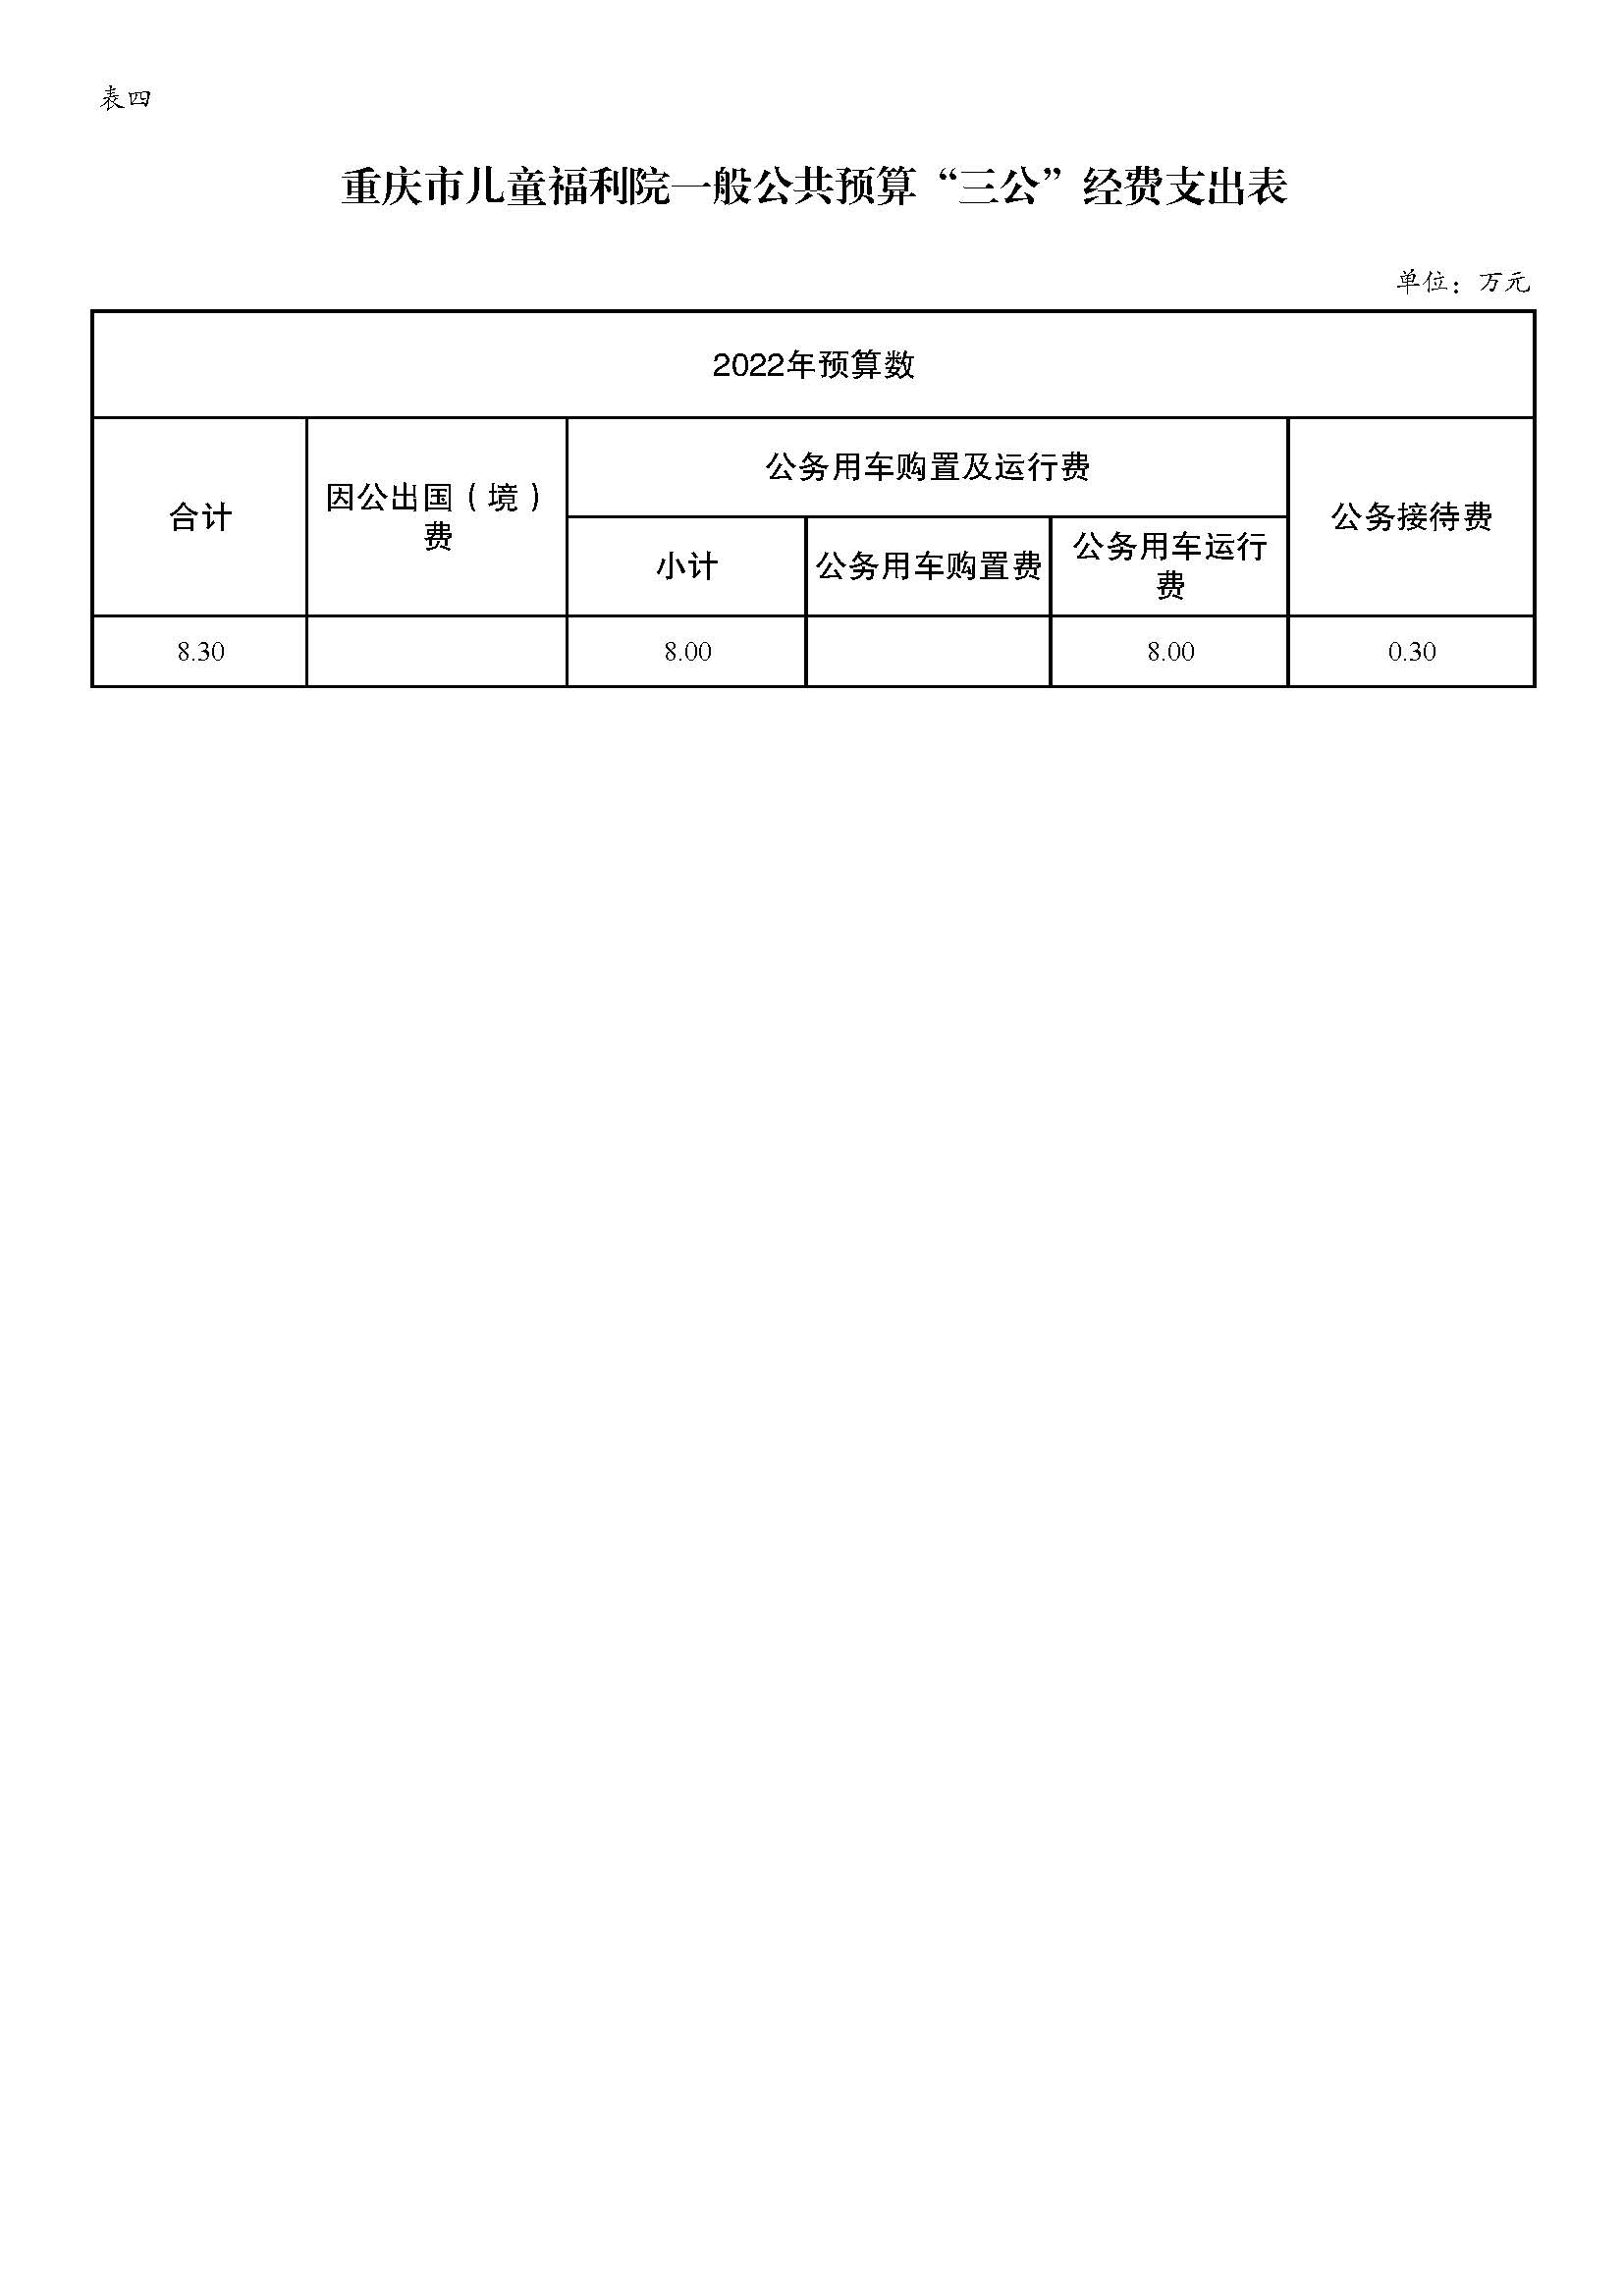 重庆市儿童福利院2022年预算公开_页面_10.jpg